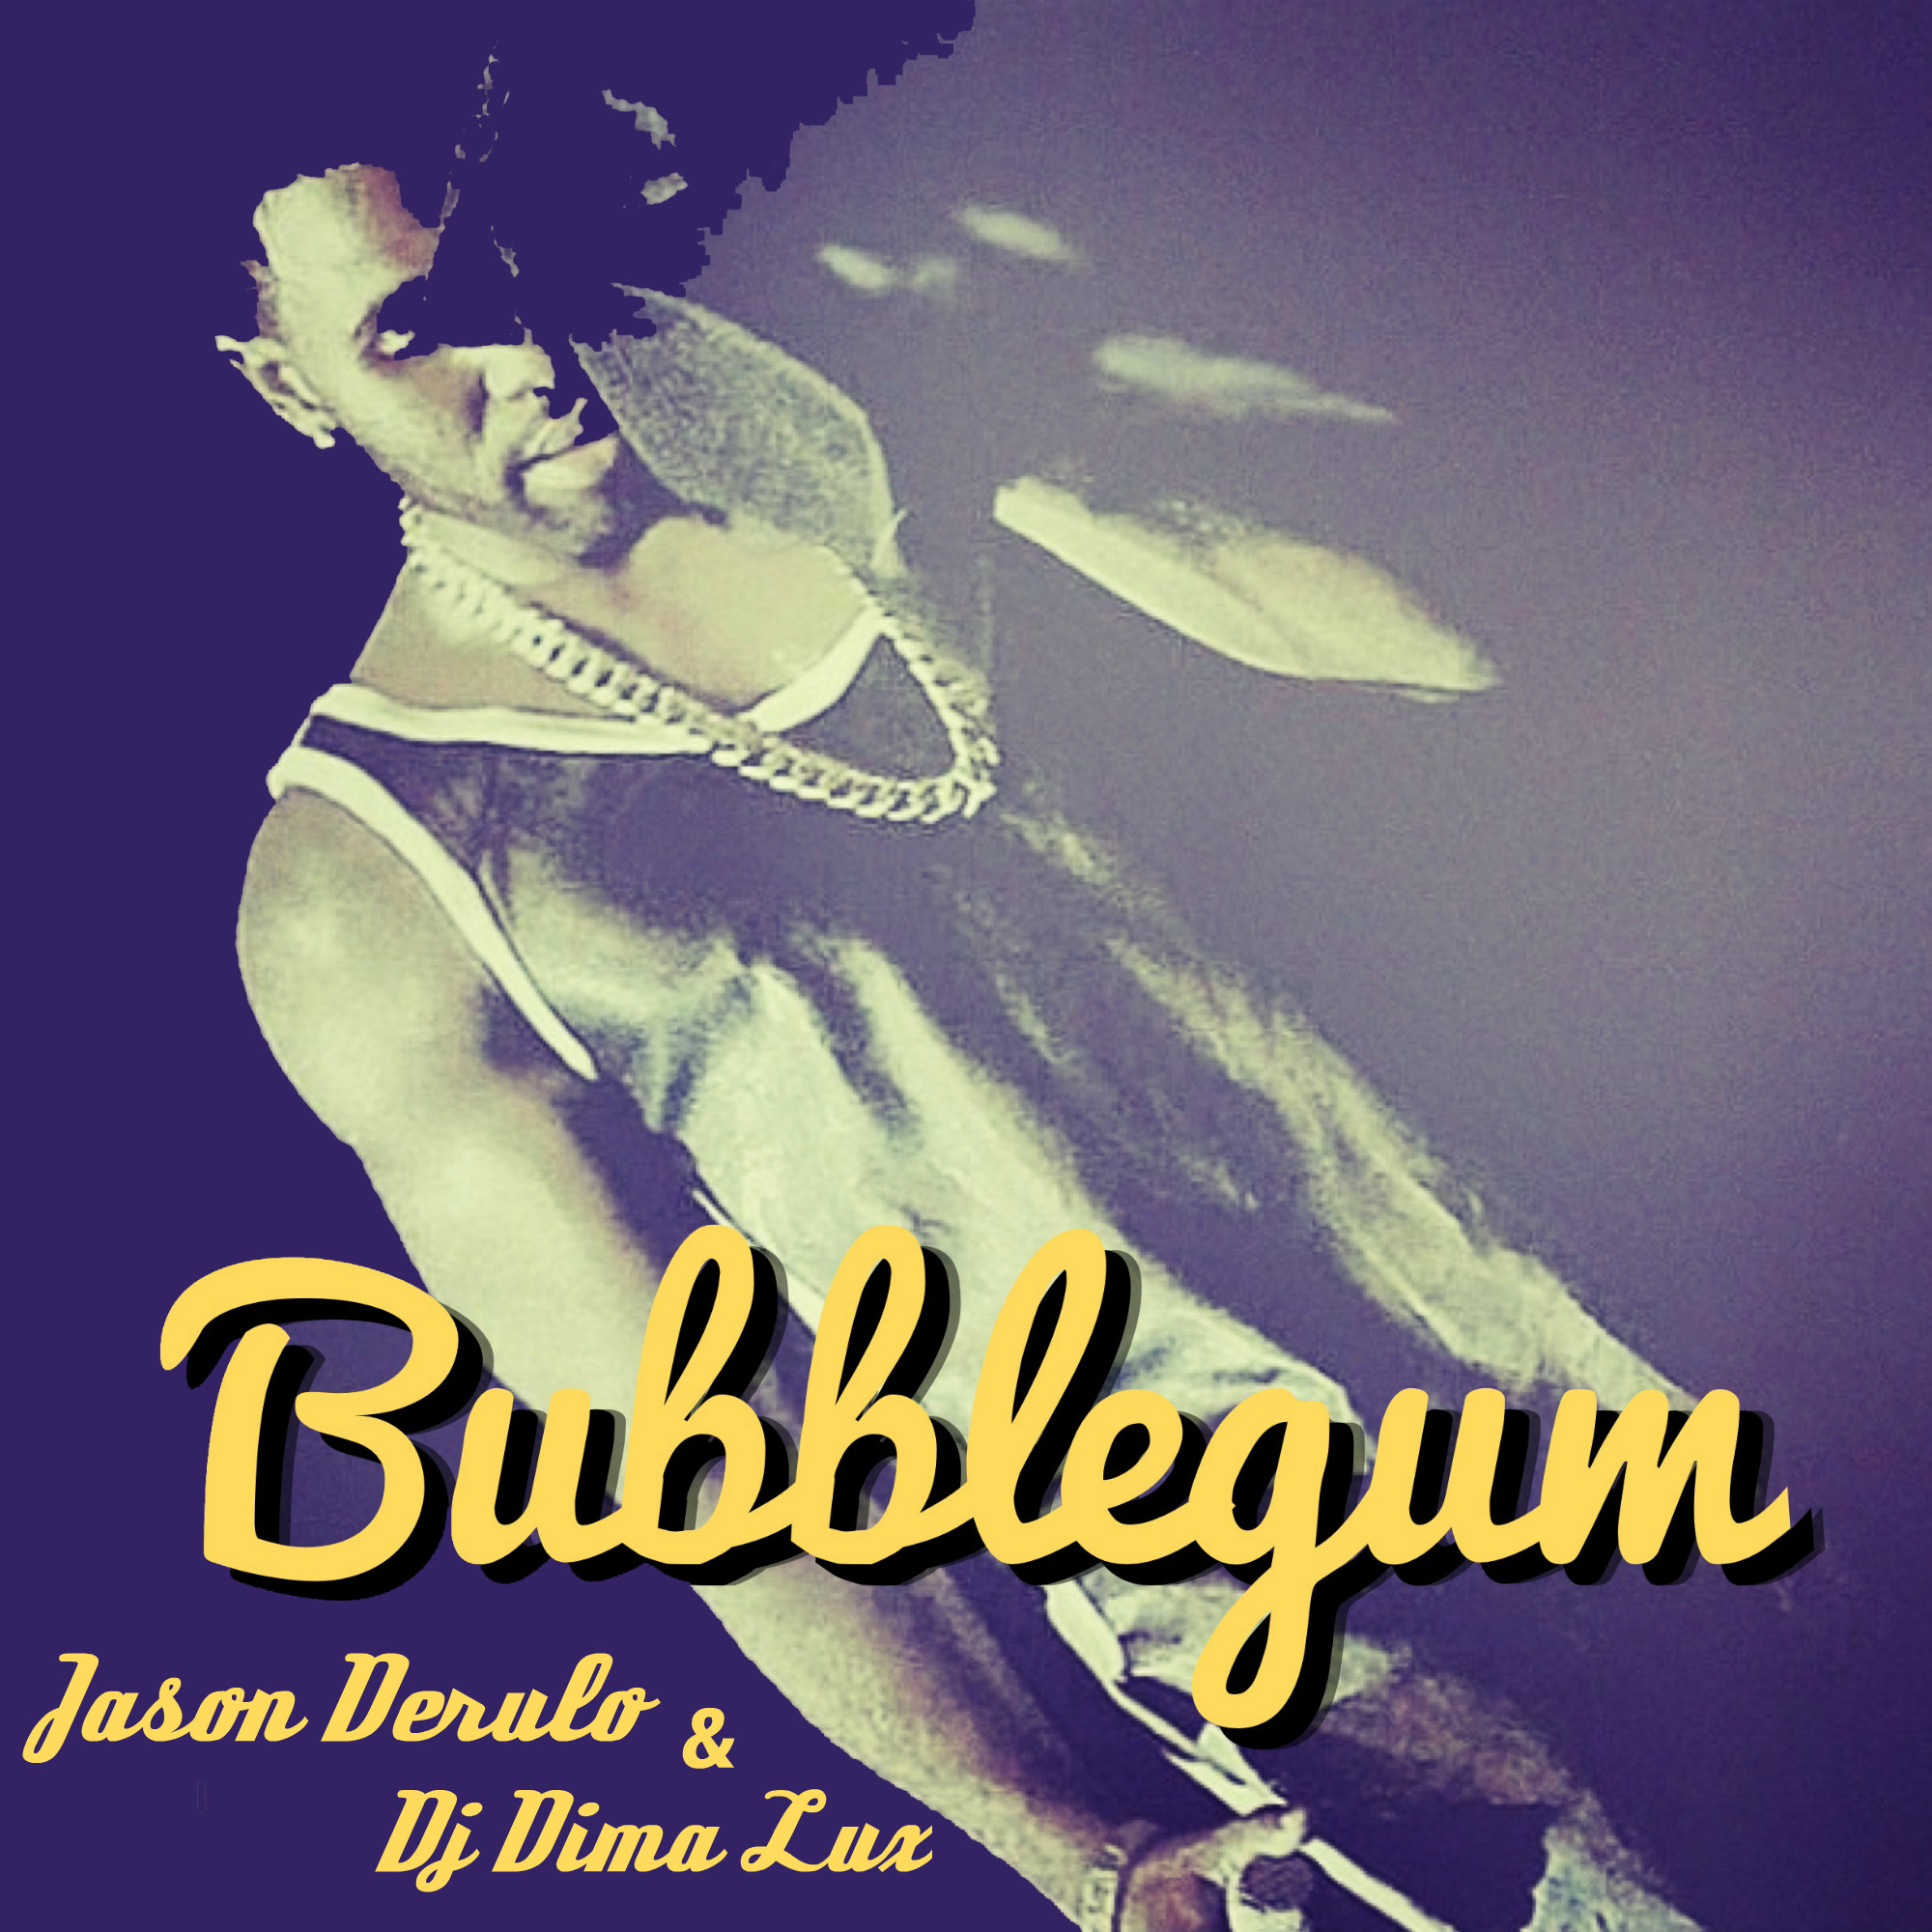 Jason Derulo - Bubblegum (Dj Dima Lux Mash Up) .